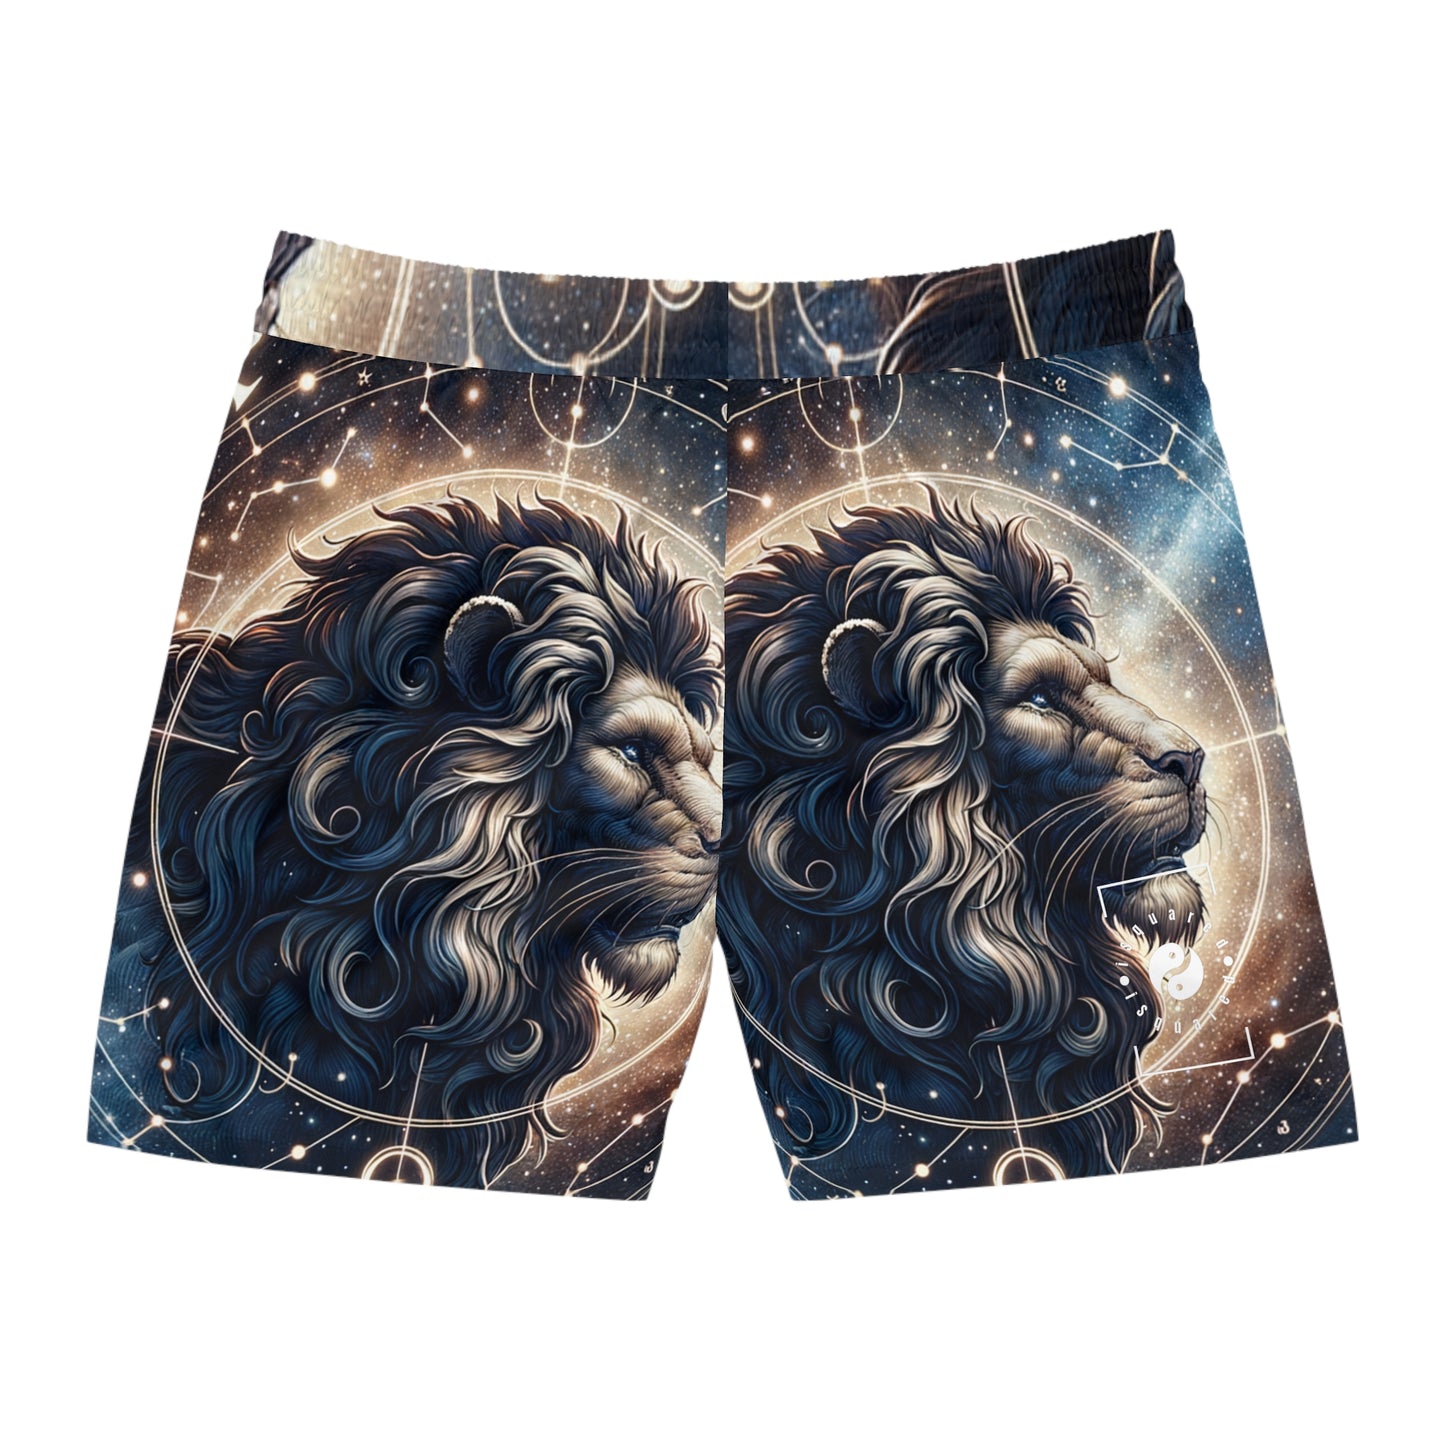 Celestial Leo Roar - Swim Shorts (Mid-Length) for Men